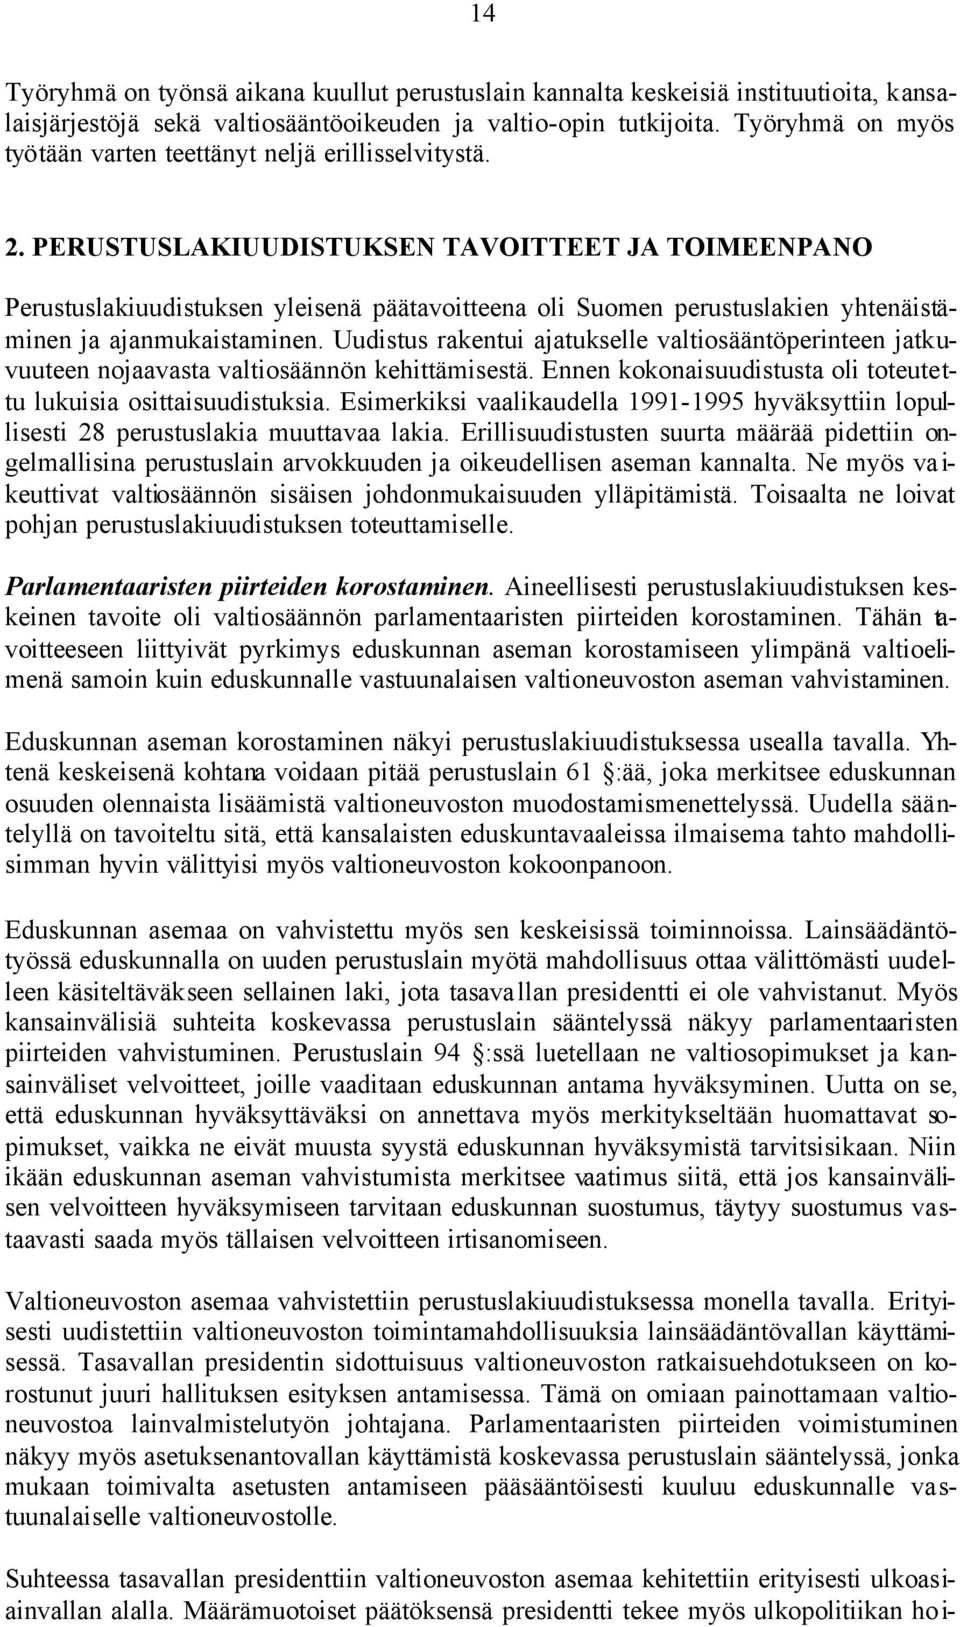 PERUSTUSLAKIUUDISTUKSEN TAVOITTEET JA TOIMEENPANO Perustuslakiuudistuksen yleisenä päätavoitteena oli Suomen perustuslakien yhtenäistäminen ja ajanmukaistaminen.